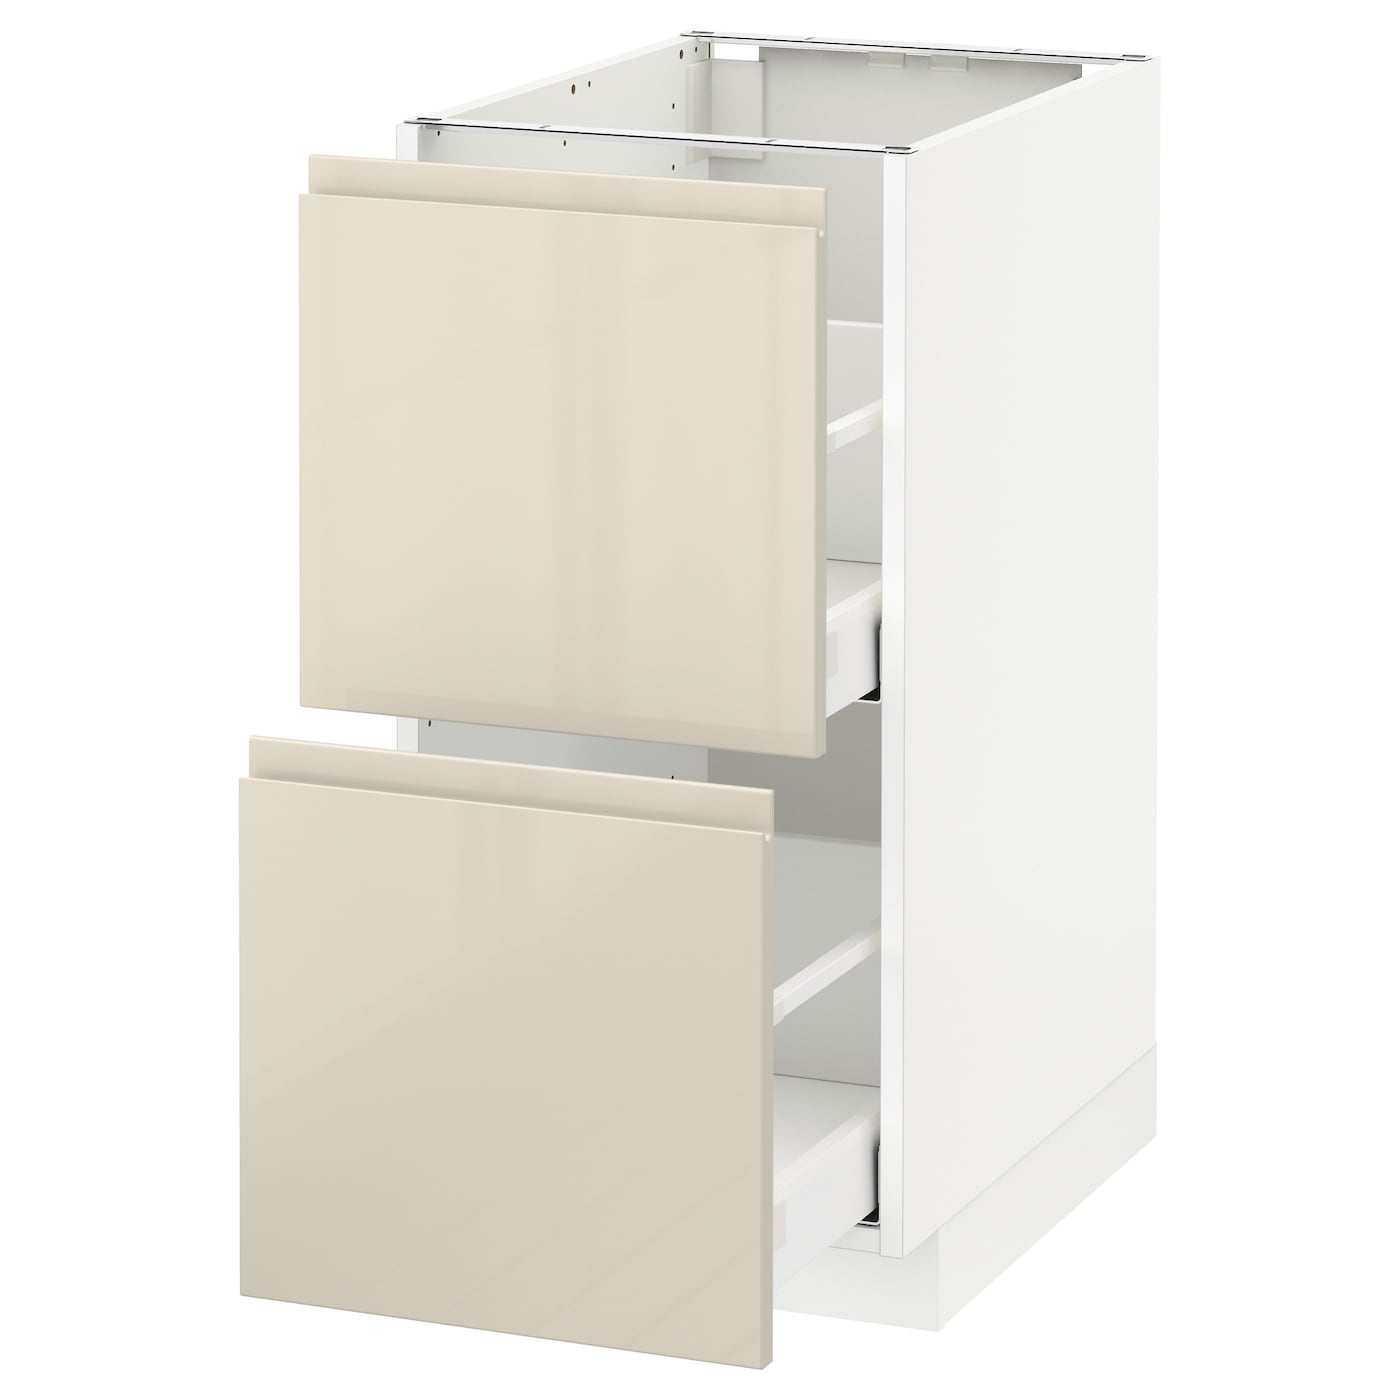 Напольный кухонный шкаф  - IKEA METOD MAXIMERA, 88x62,1x40см, белый/бежевый, МЕТОД МАКСИМЕРА ИКЕА